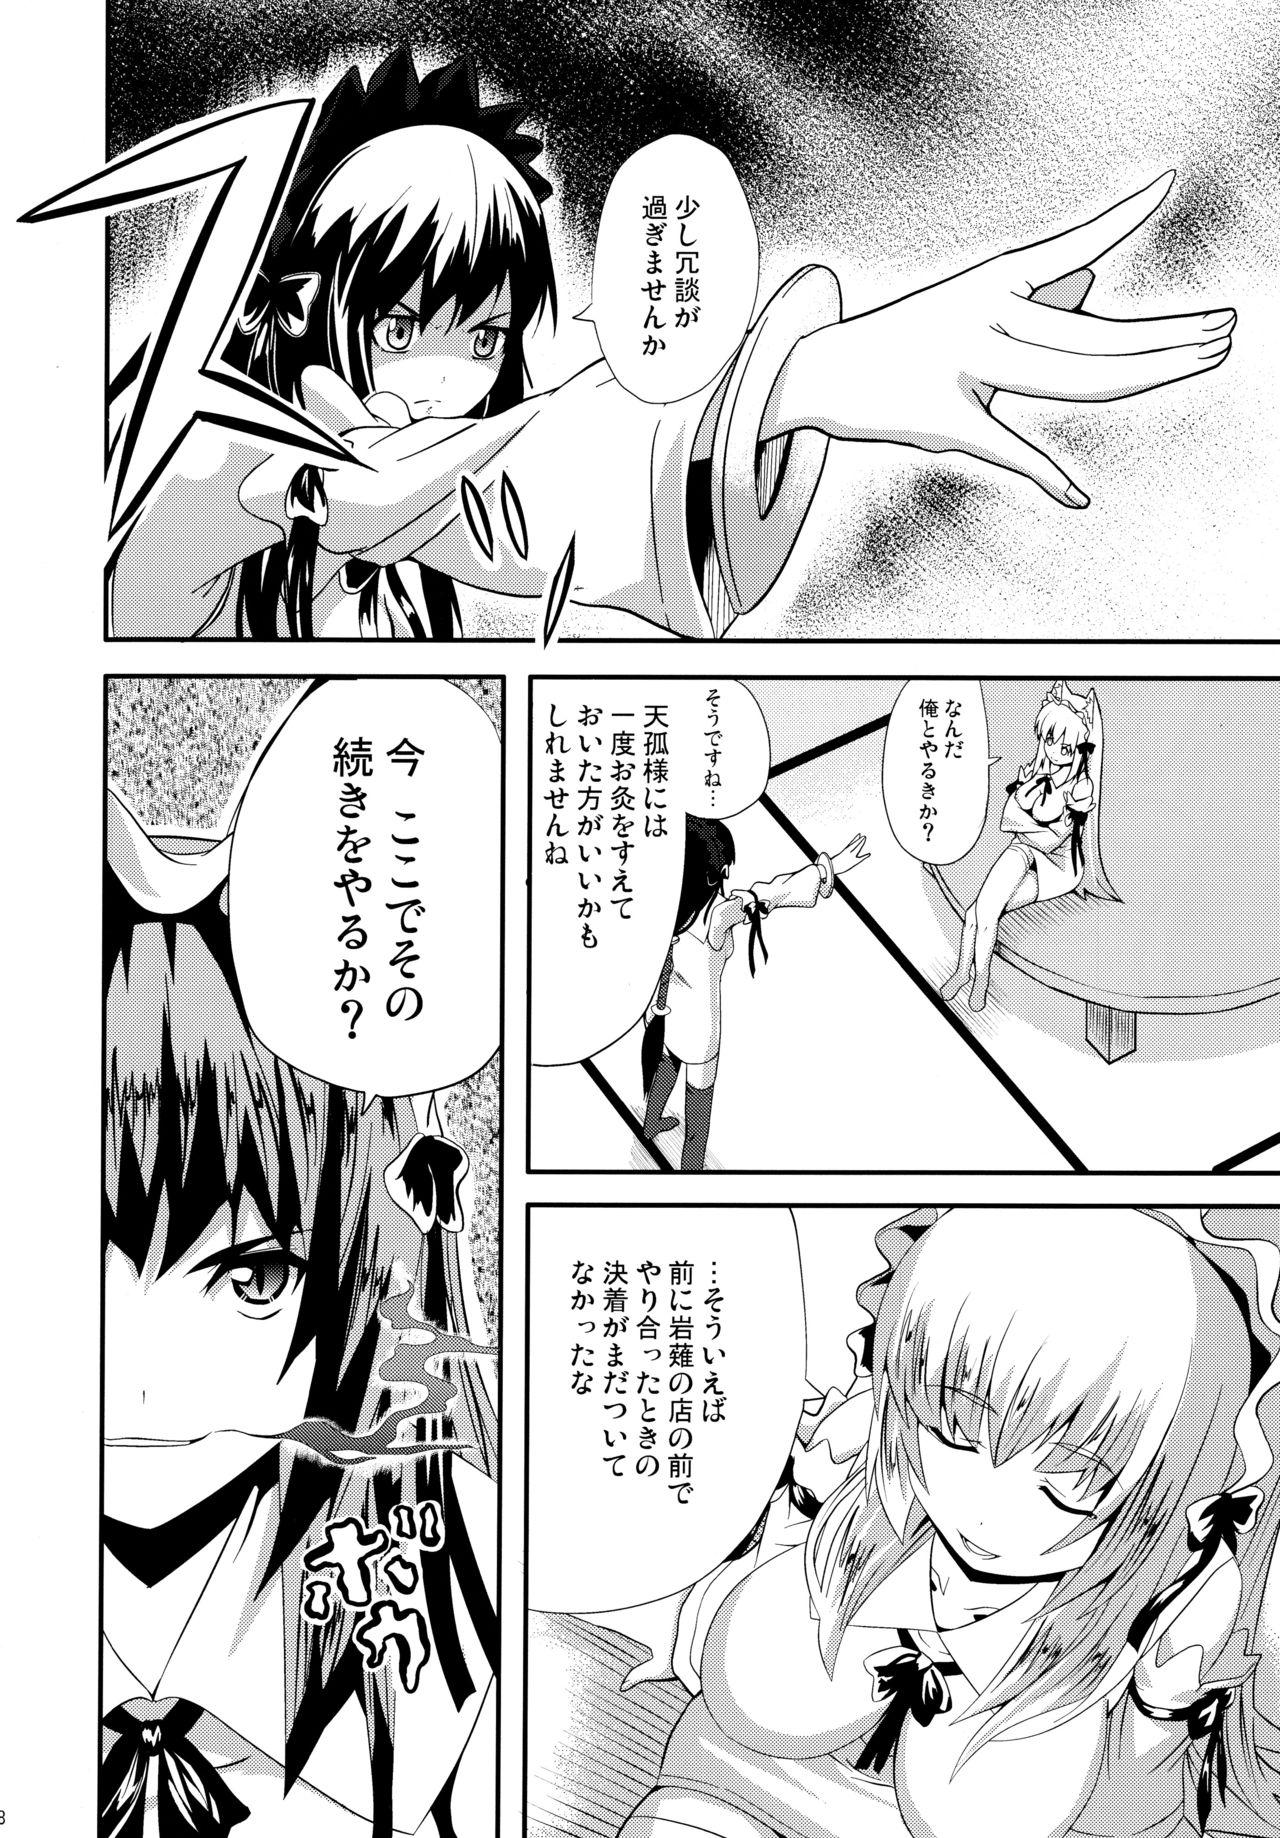 Machine Hare, Tokidoki Oinari-sama 4 - Wagaya no oinari sama Fudendo - Page 8